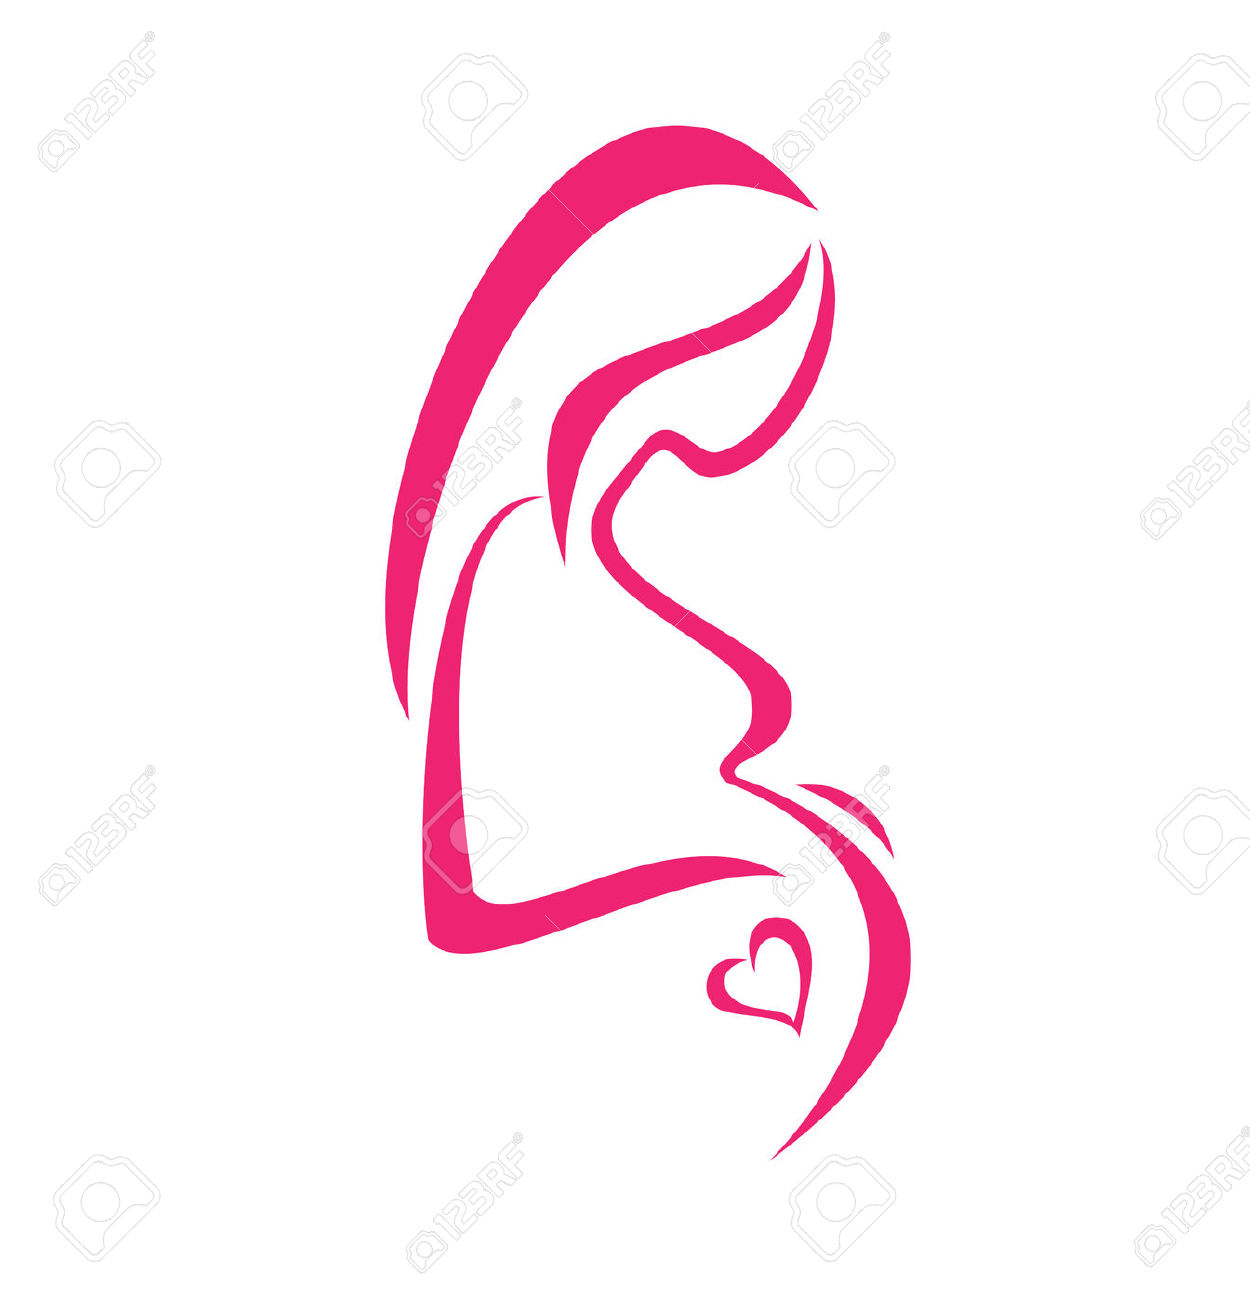 Pregnancy clip art images.